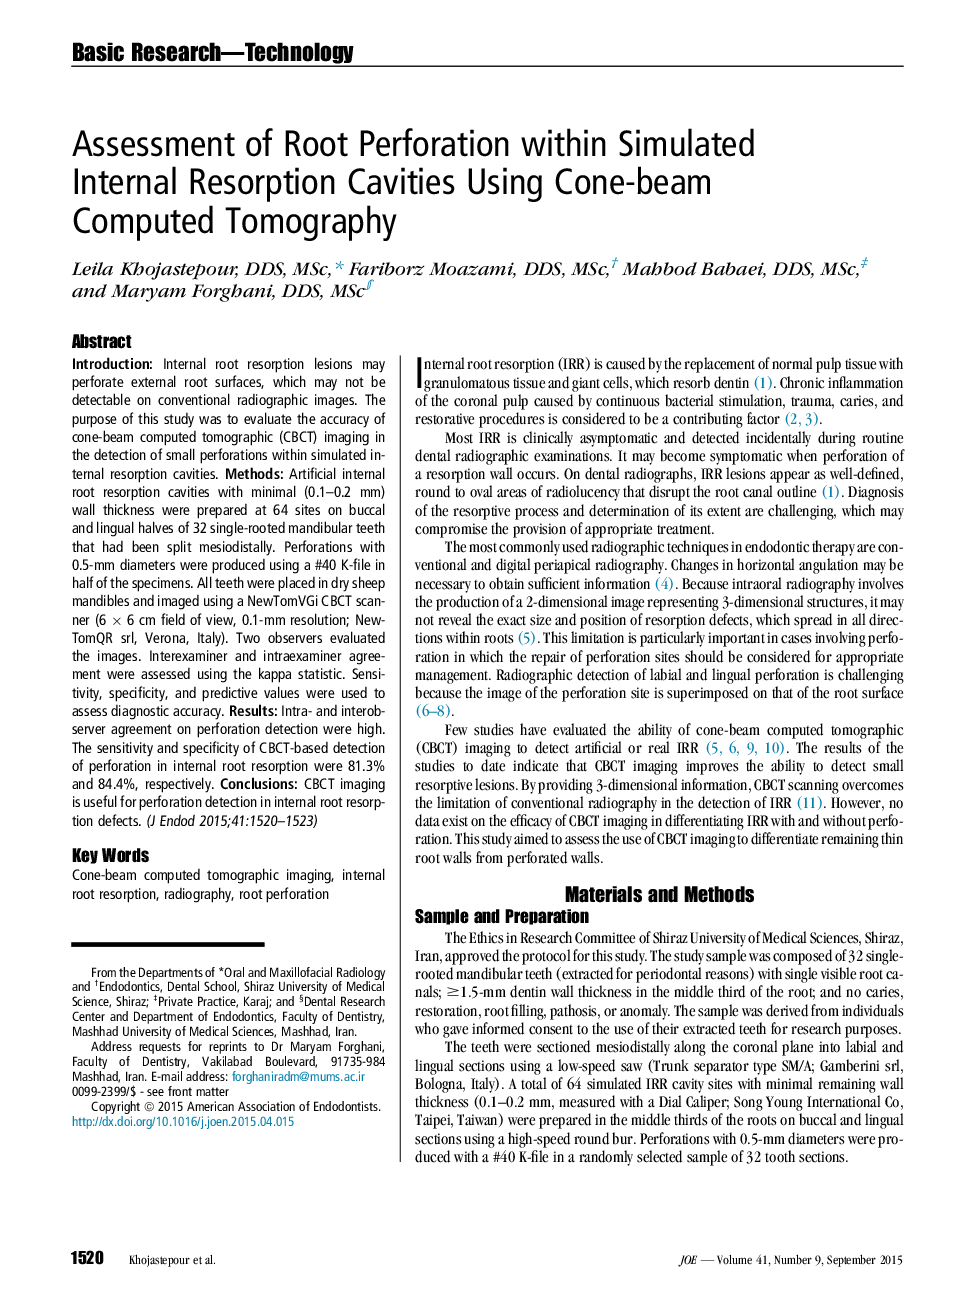 بررسی پراش ریشه در داخل حفره های تحریک داخلی شبیه سازی شده با استفاده از توموگرافی کامپیوتری پرتو کروی 